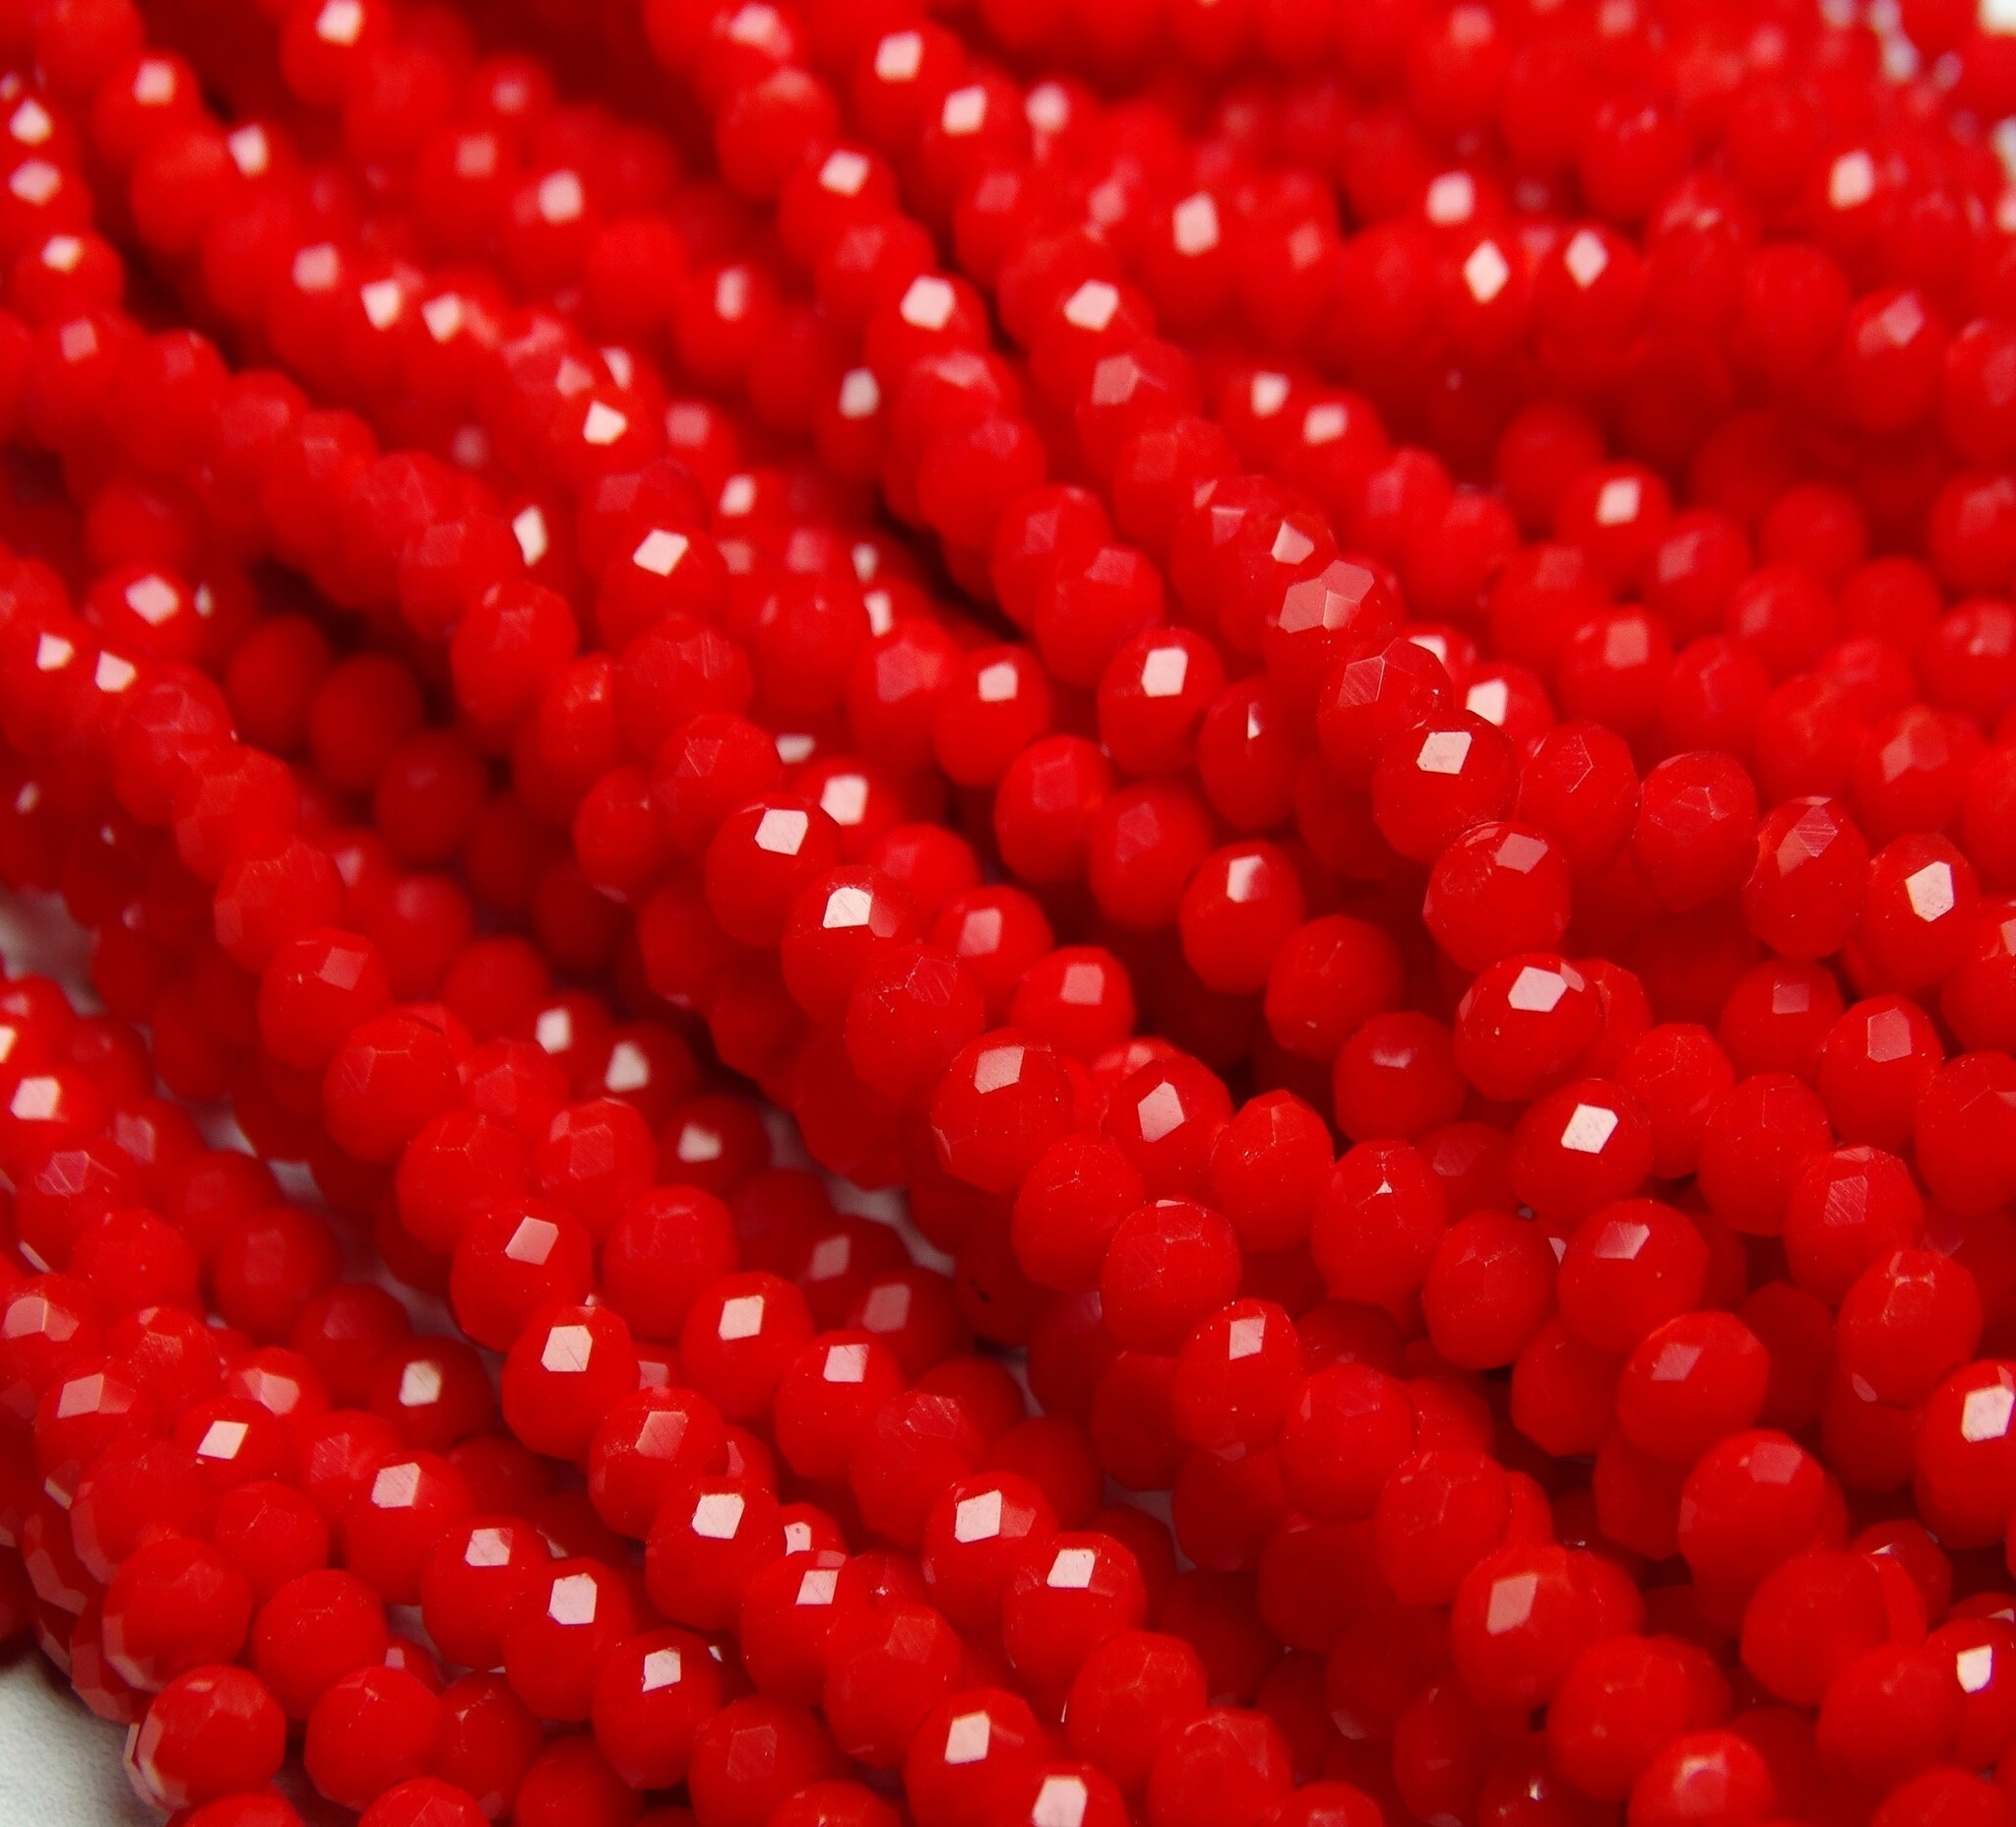 БН002НН23 Хрустальные бусины "рондель", цвет: ярко-красный непрозрачный, 2х3 мм, кол-во: 95-100 шт.